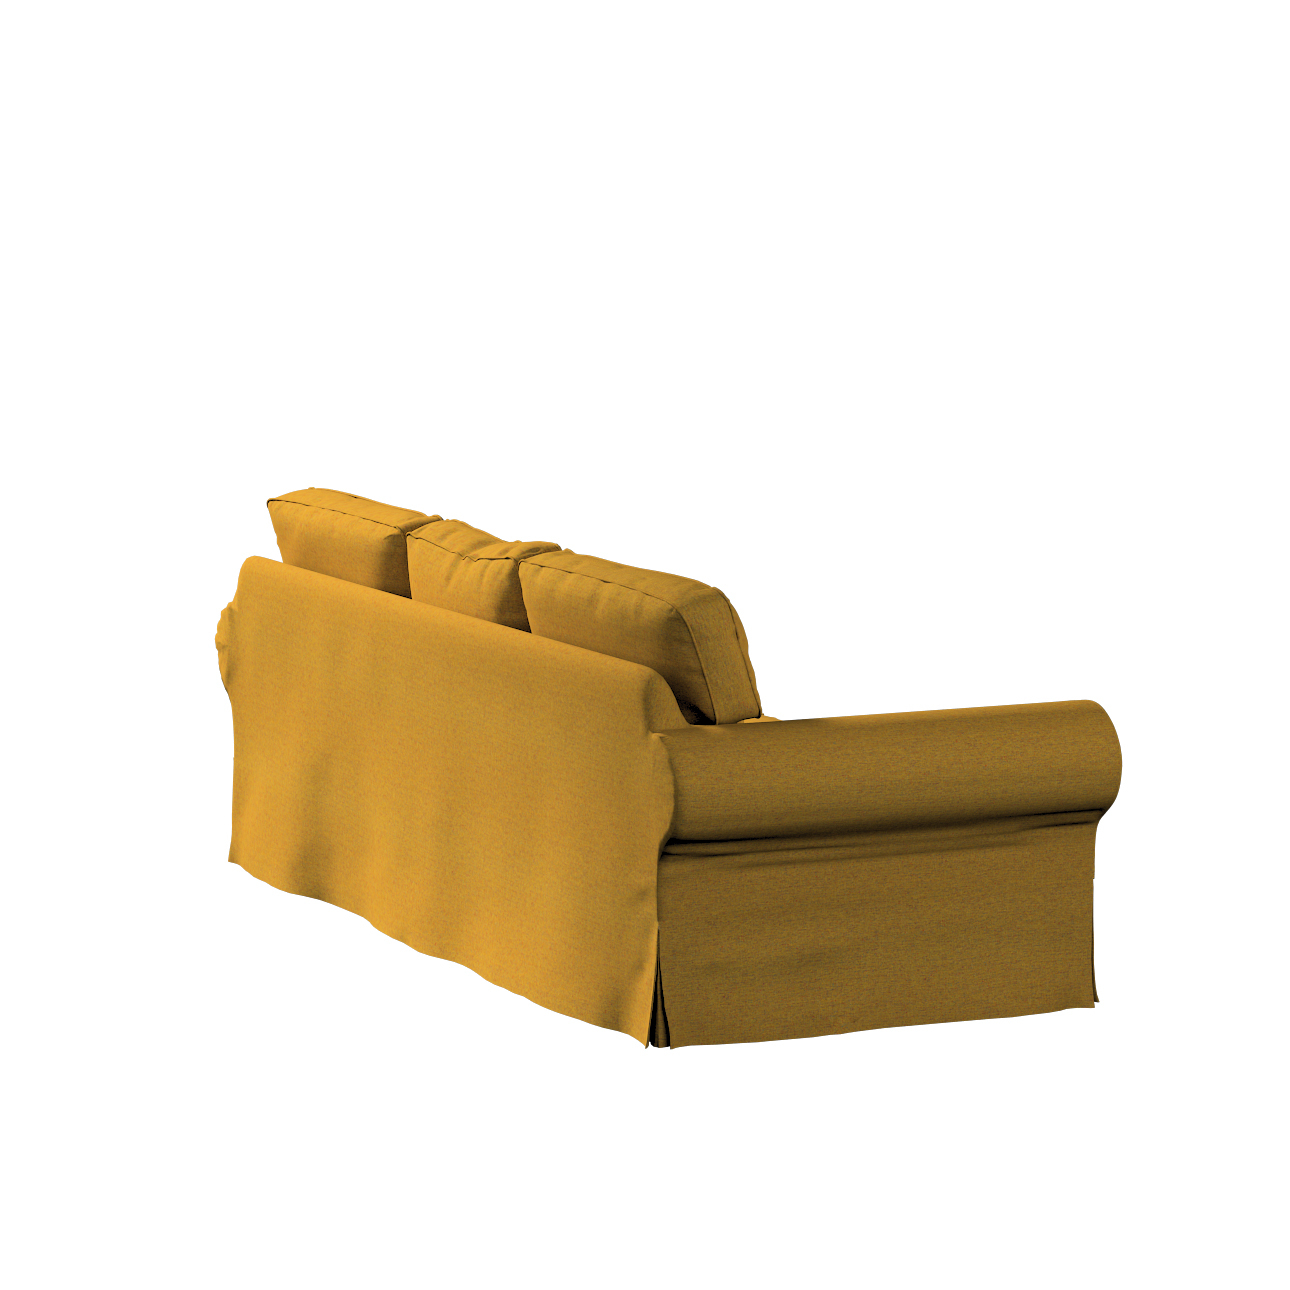 Bezug für Ektorp 3-Sitzer Sofa nicht ausklappbar, gelb, Sofabezug für Ektor günstig online kaufen